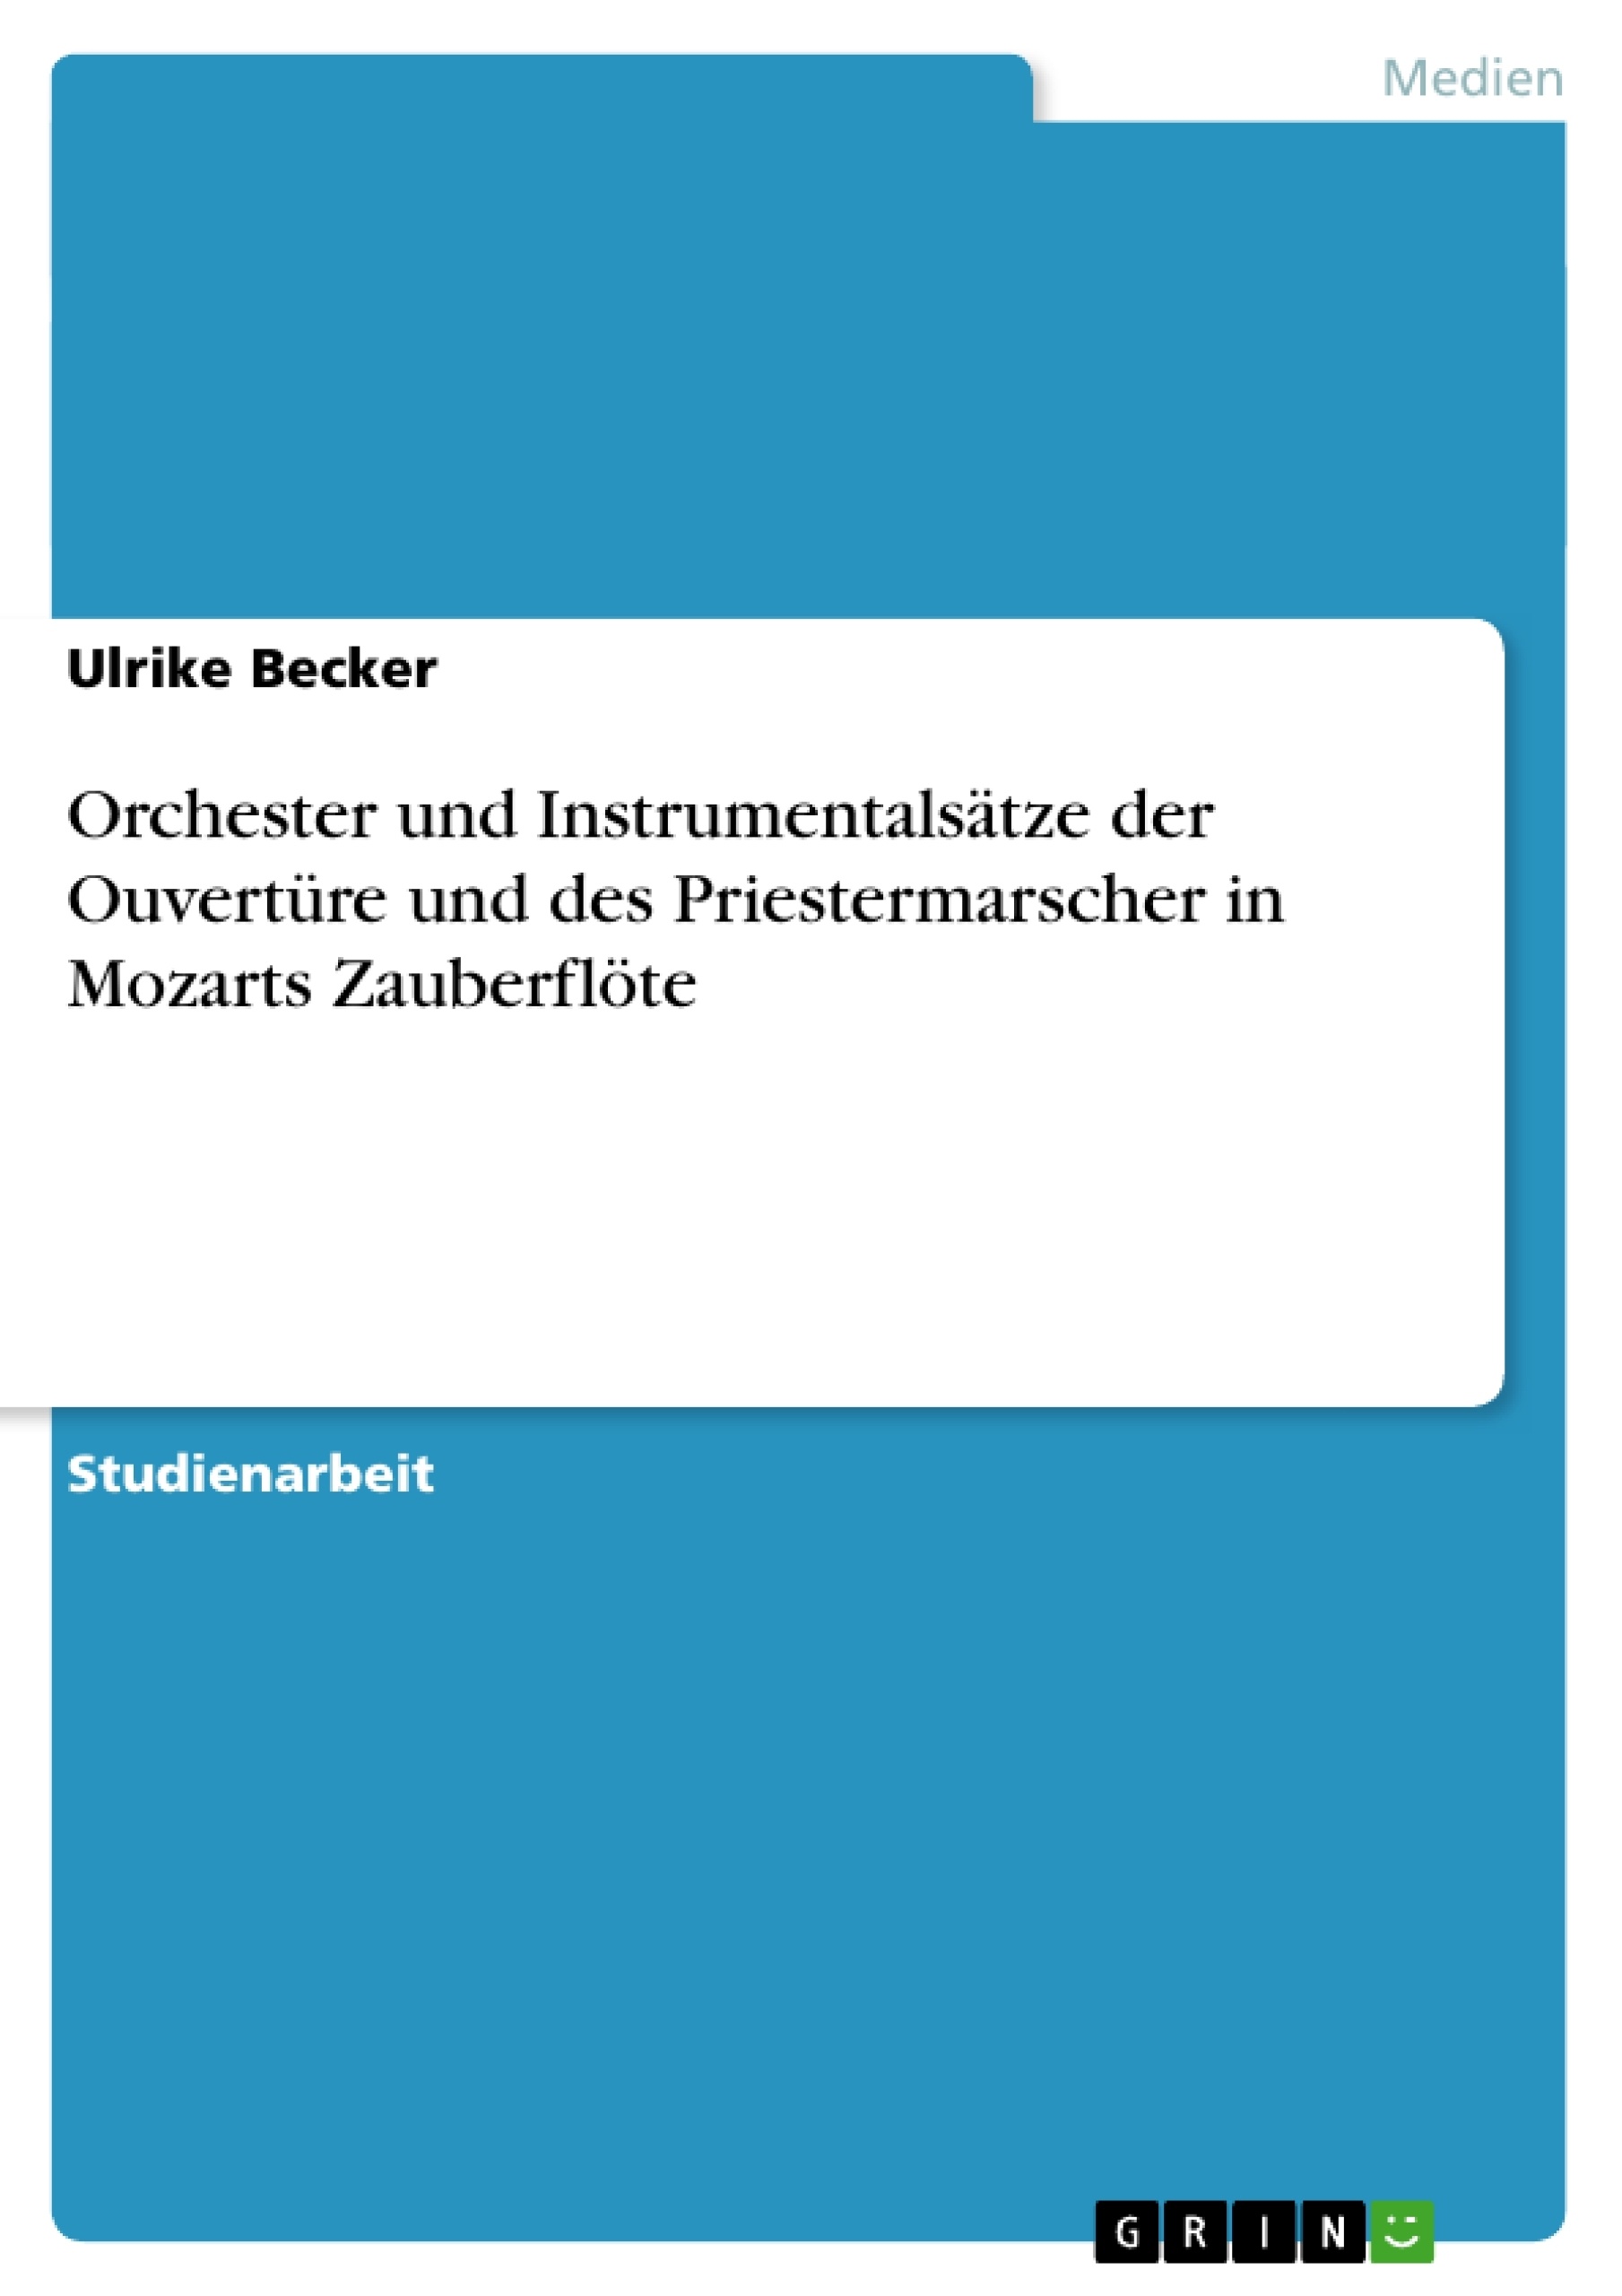 Título: Orchester und Instrumentalsätze der Ouvertüre und des Priestermarscher in Mozarts Zauberflöte